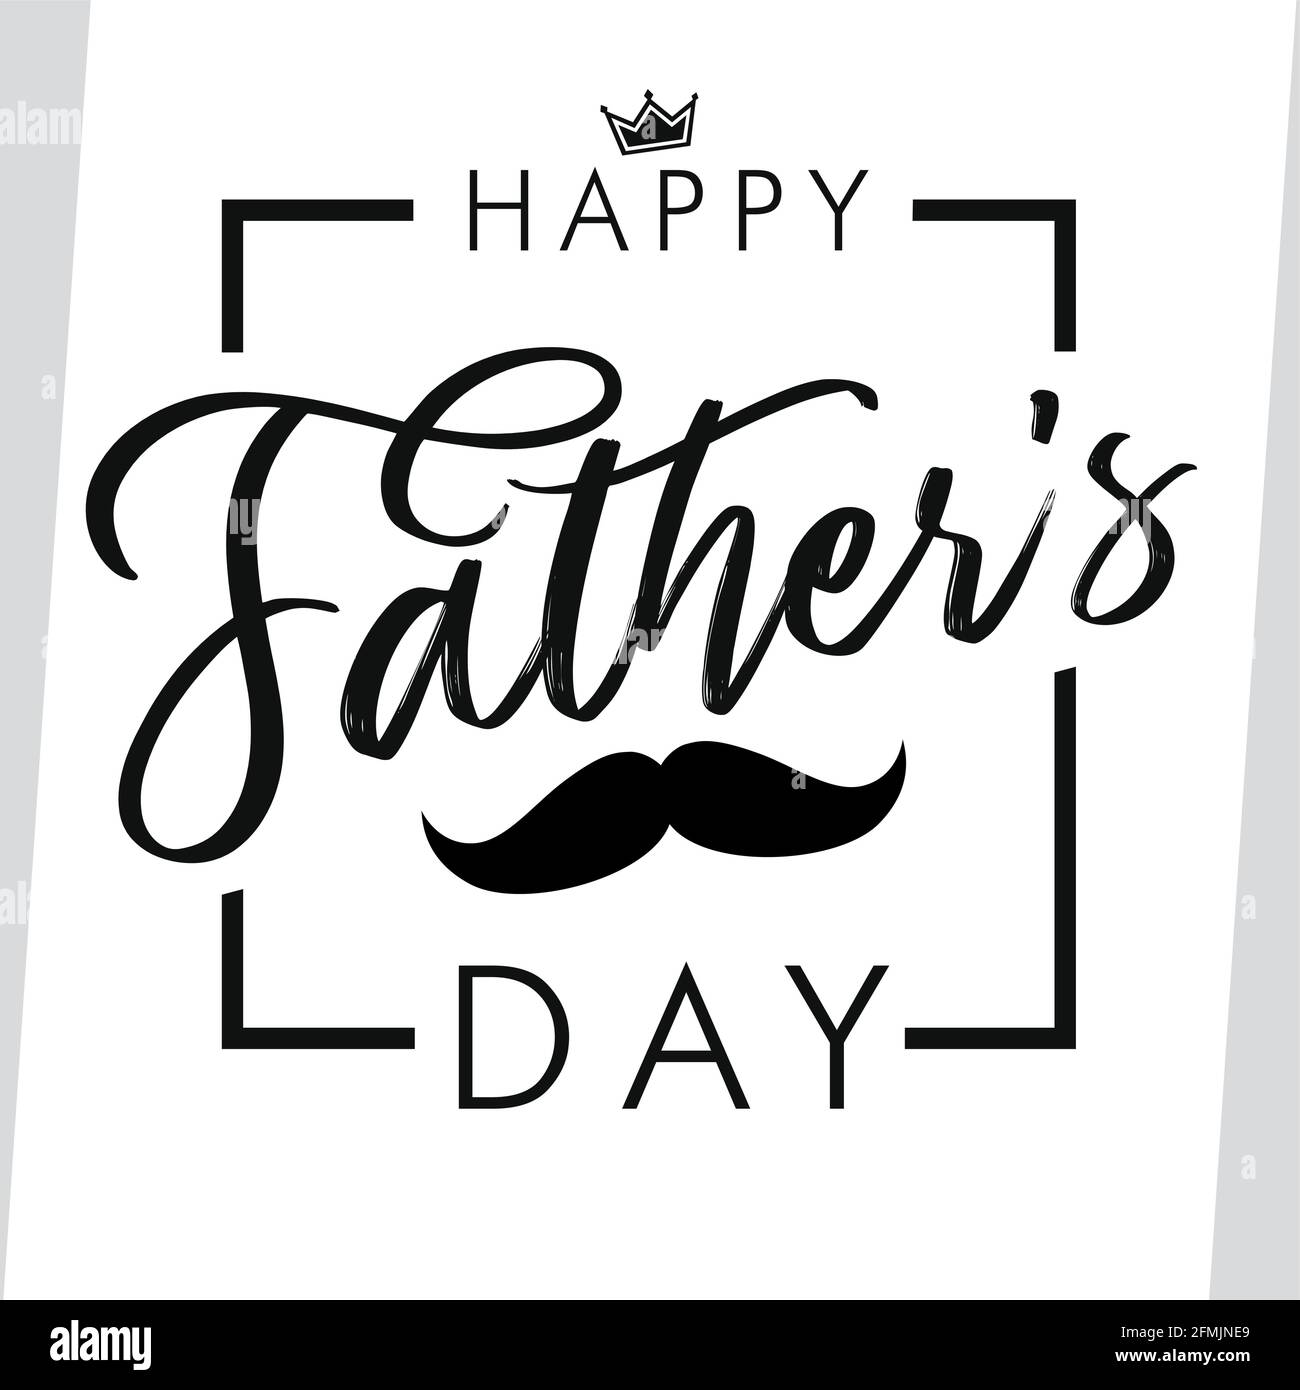 Happy Father's Day Schwarz-Weiß-Farben-Postkarte. Happy Fathers Day kreative Gratzen. Pinselschrift schönes Poster, kalligrafische Elemente. Isoliertes abs Stock Vektor